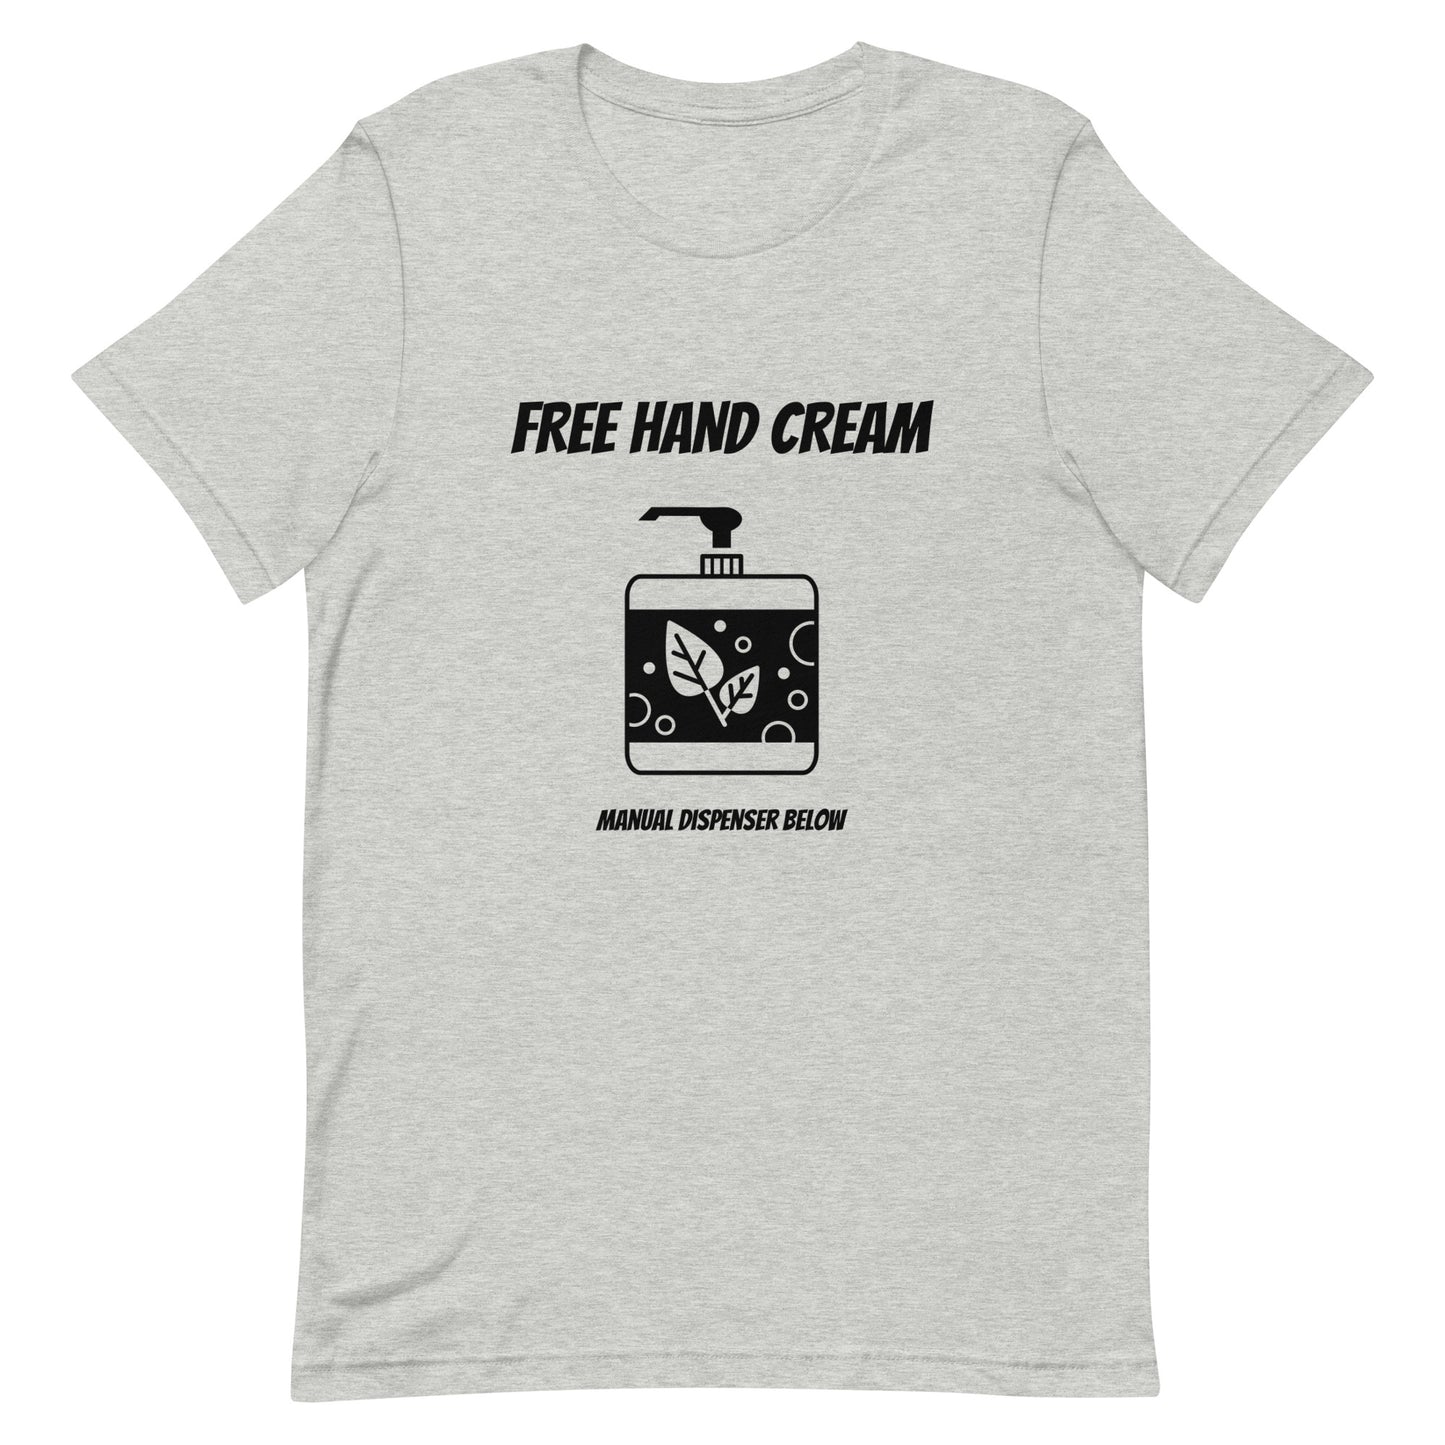 Free hand cream